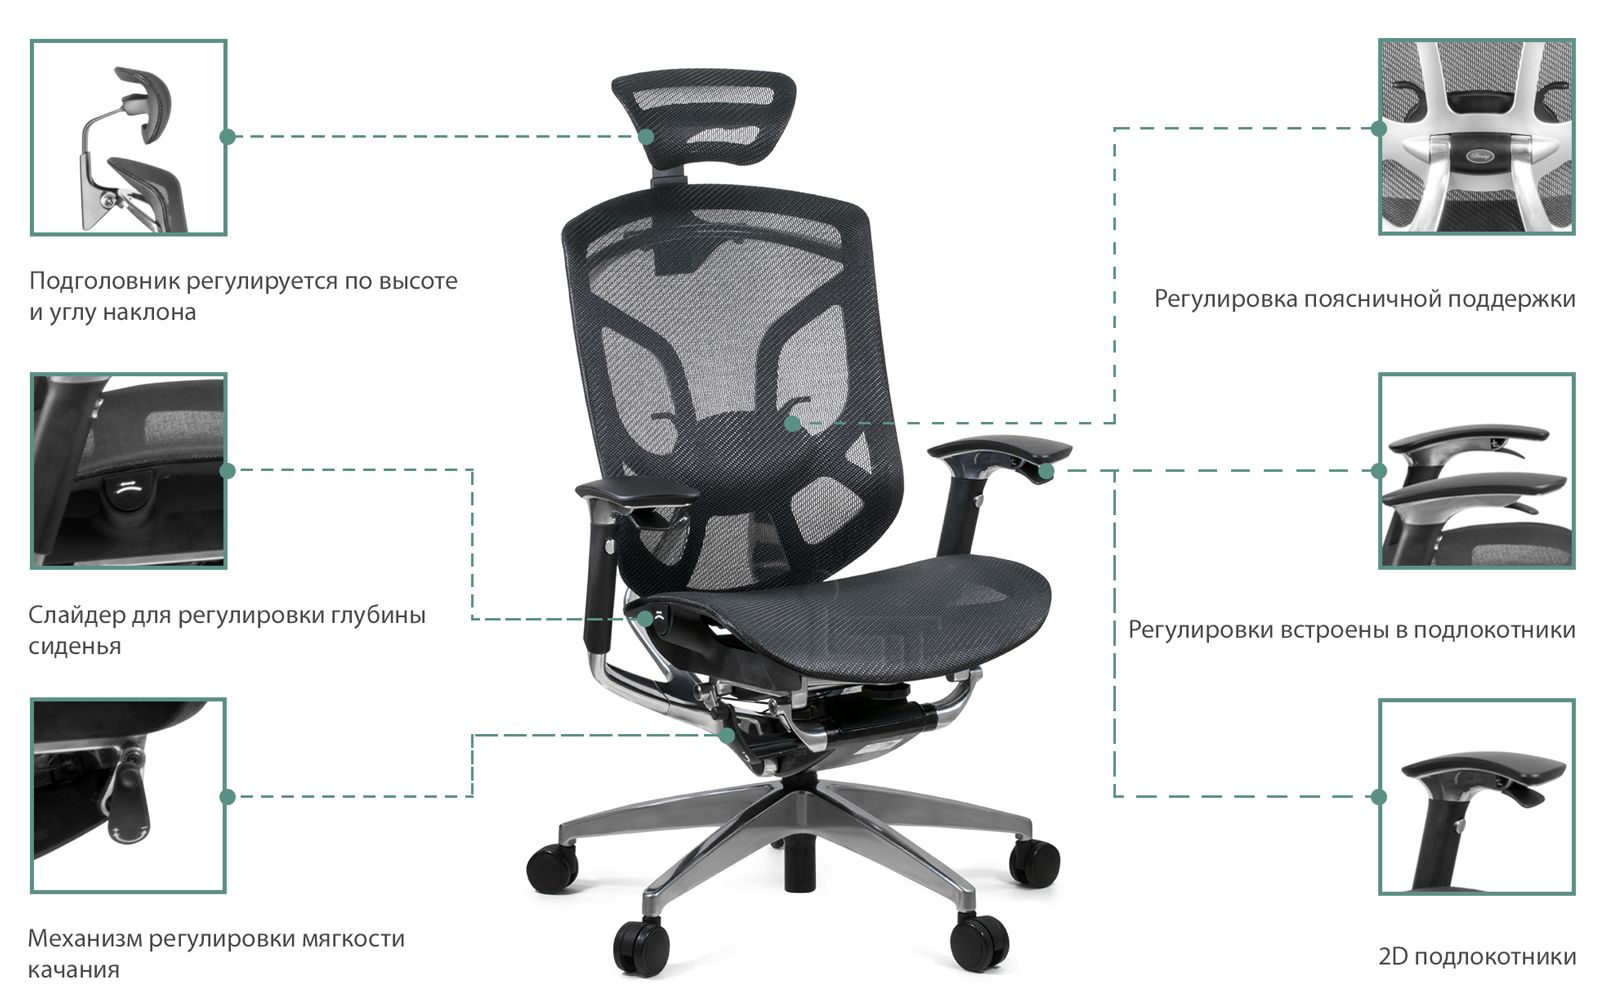 Как выбрать удобное кресло для работы за компьютером. cтатьи, тесты, обзоры